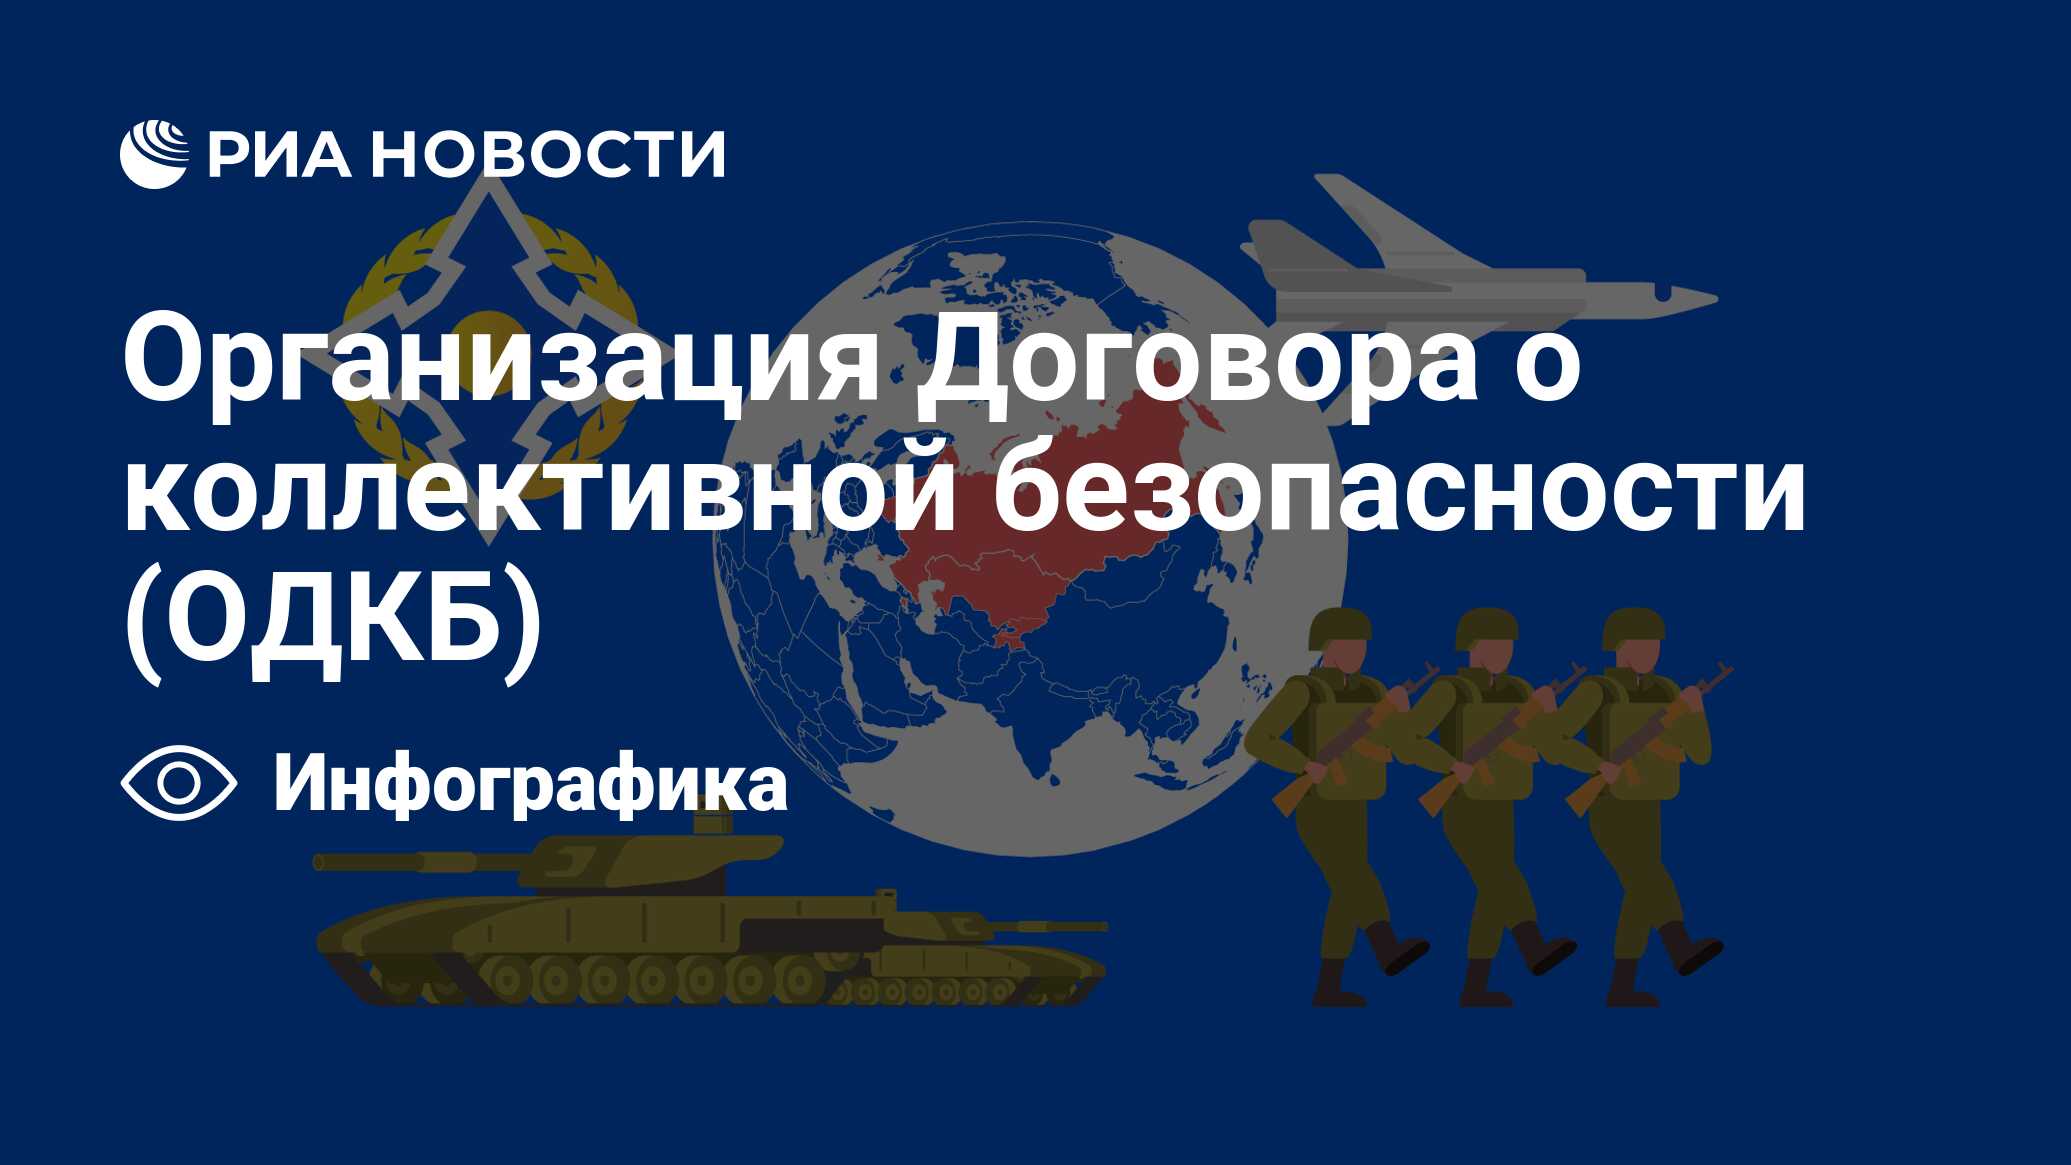 Организация Договора о коллективной безопасности (ОДКБ) - РИА Новости,  28.11.2019